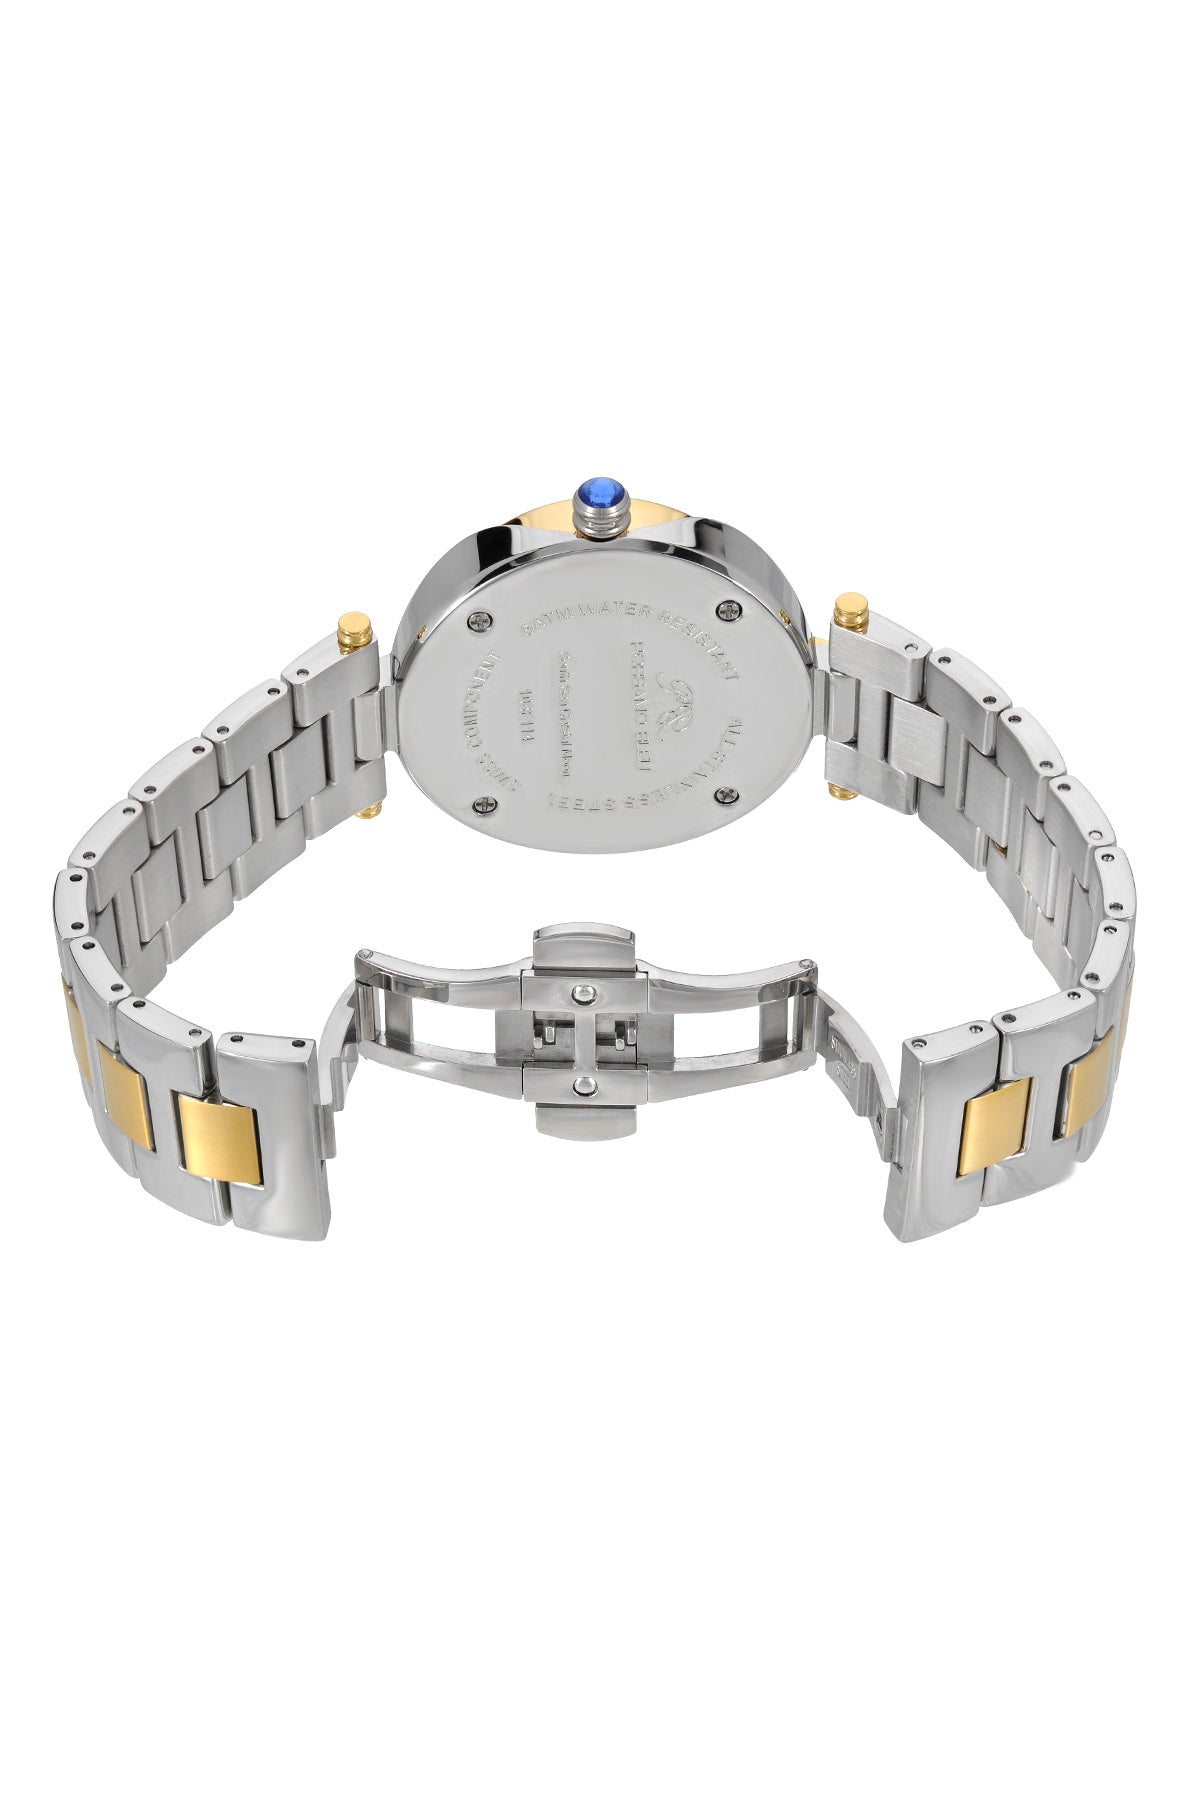 Porsamo Bleu South Sea Crystal Moon Luxury Women's Stainless Steel Watch, Two Tone 108FSSM